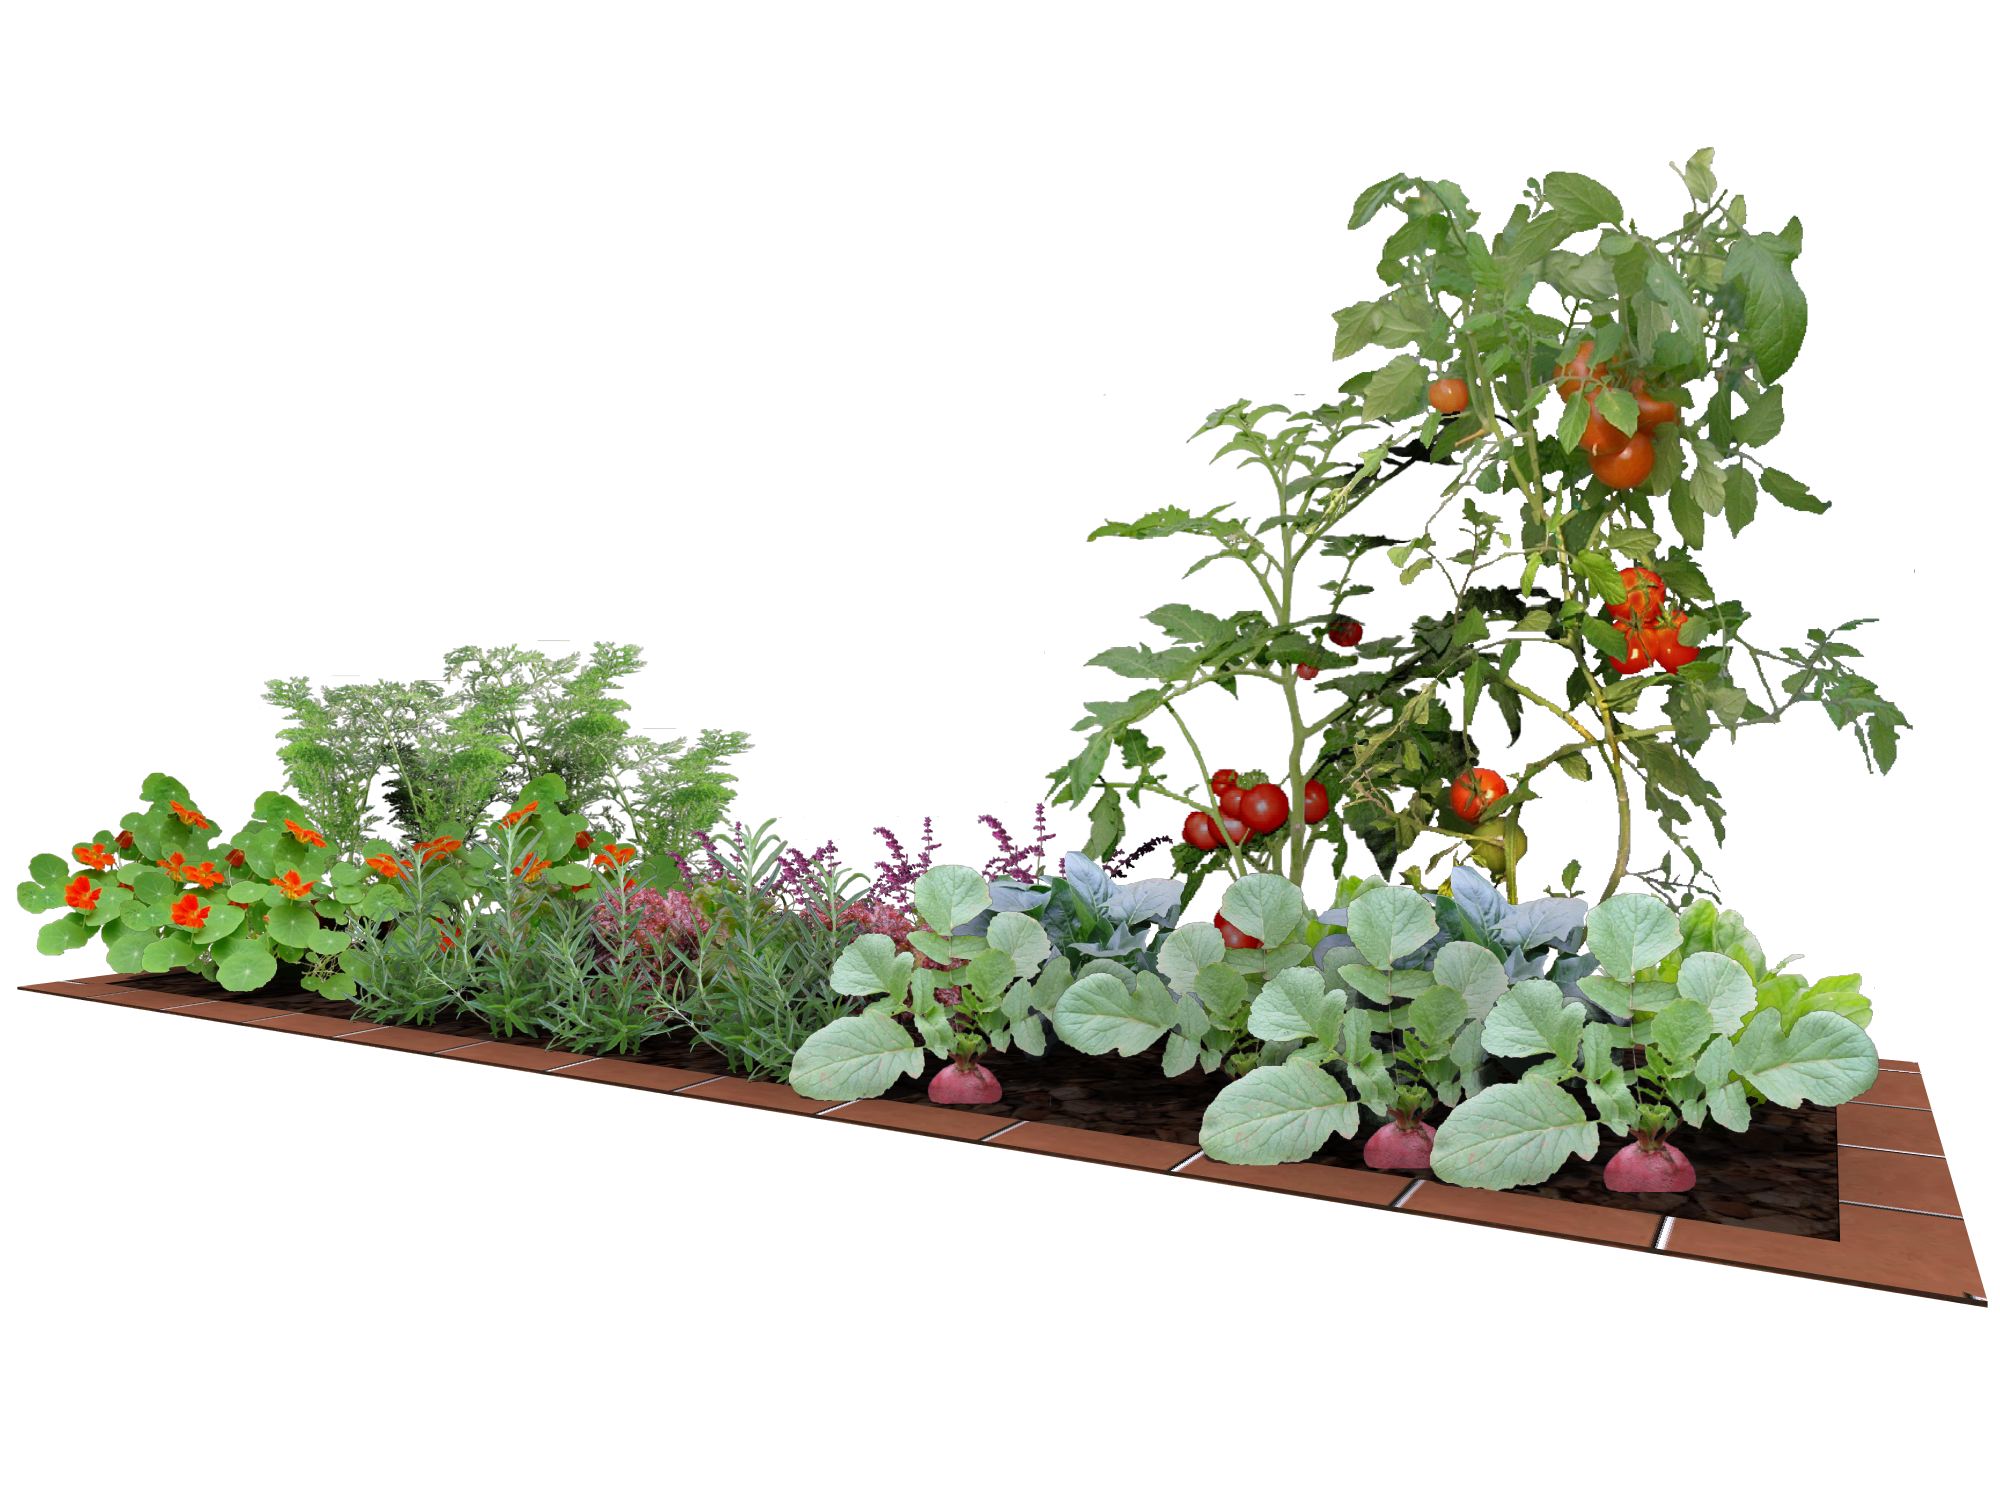 野菜 ポタジェ エクスプラット エクステリア ガーデンデザイン プラン検索サイト Rikcadデータ無料配信